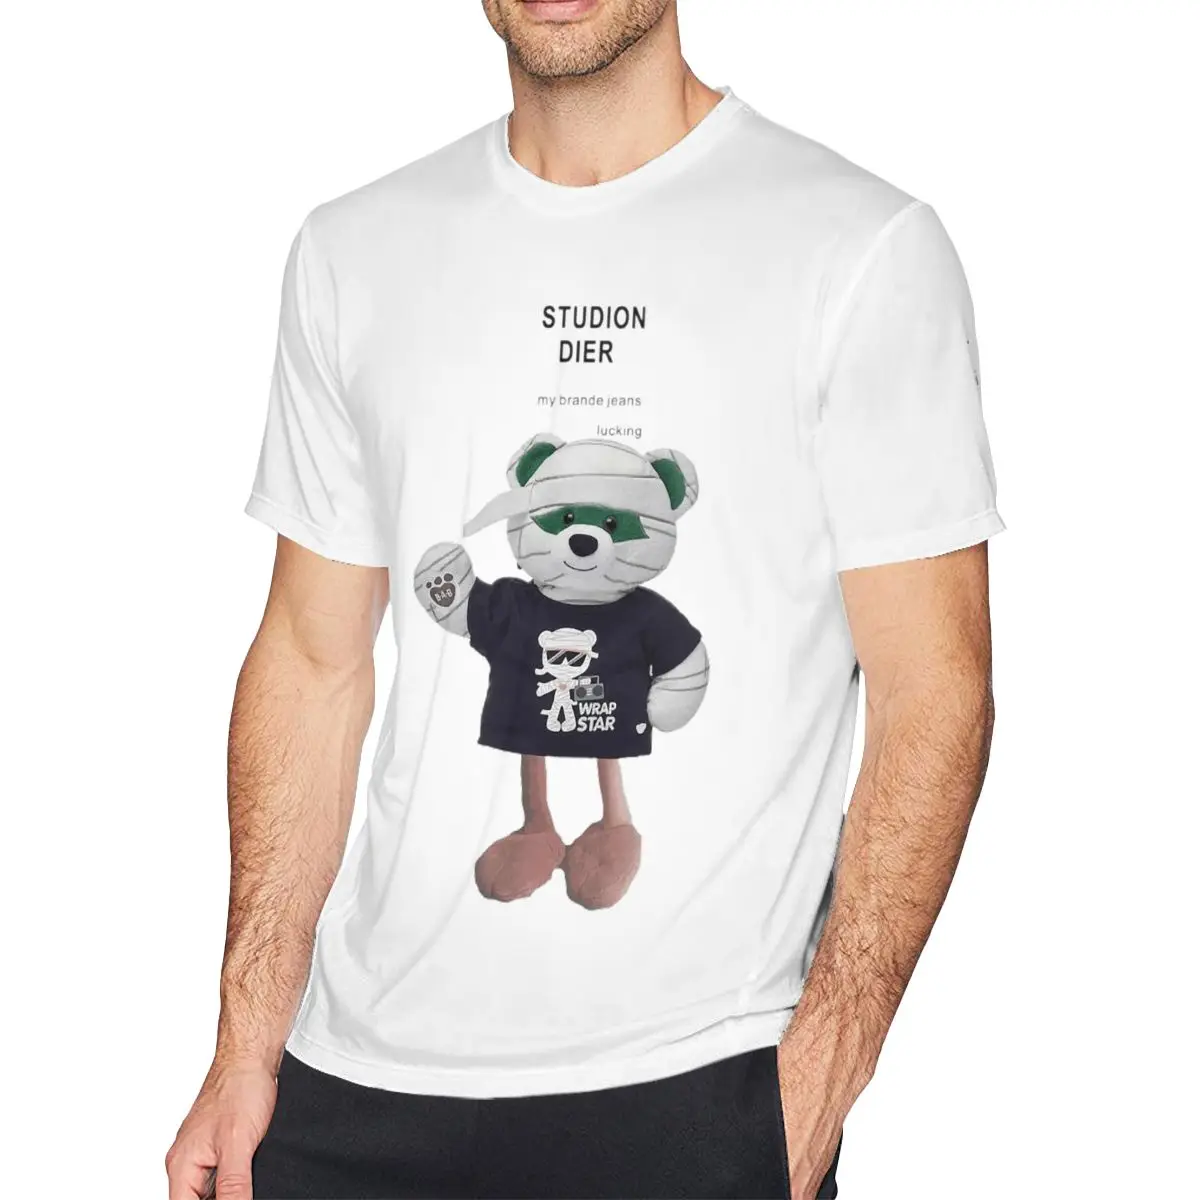 

Мужские футболки Studion Dier, Повседневная футболка из чистого хлопка с милым маленьким медведем, футболка с коротким рукавом и круглым вырезом, одежда с графическим принтом